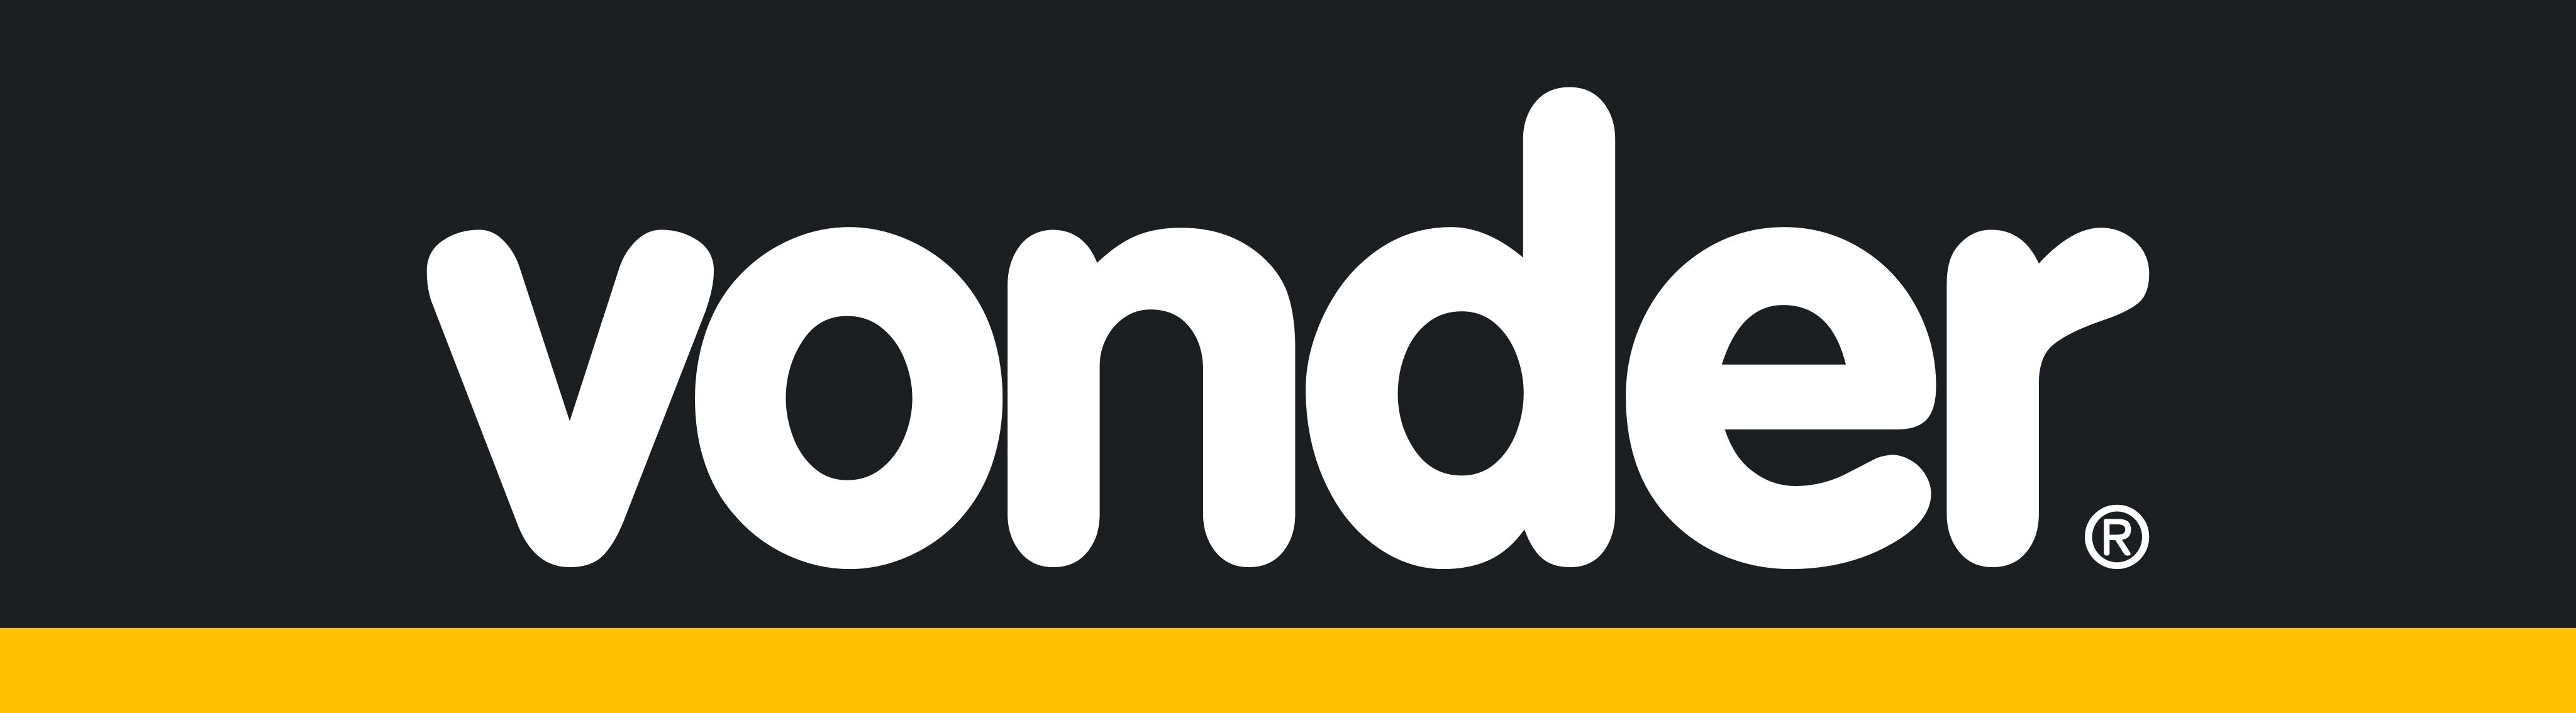 vonder-logo-1